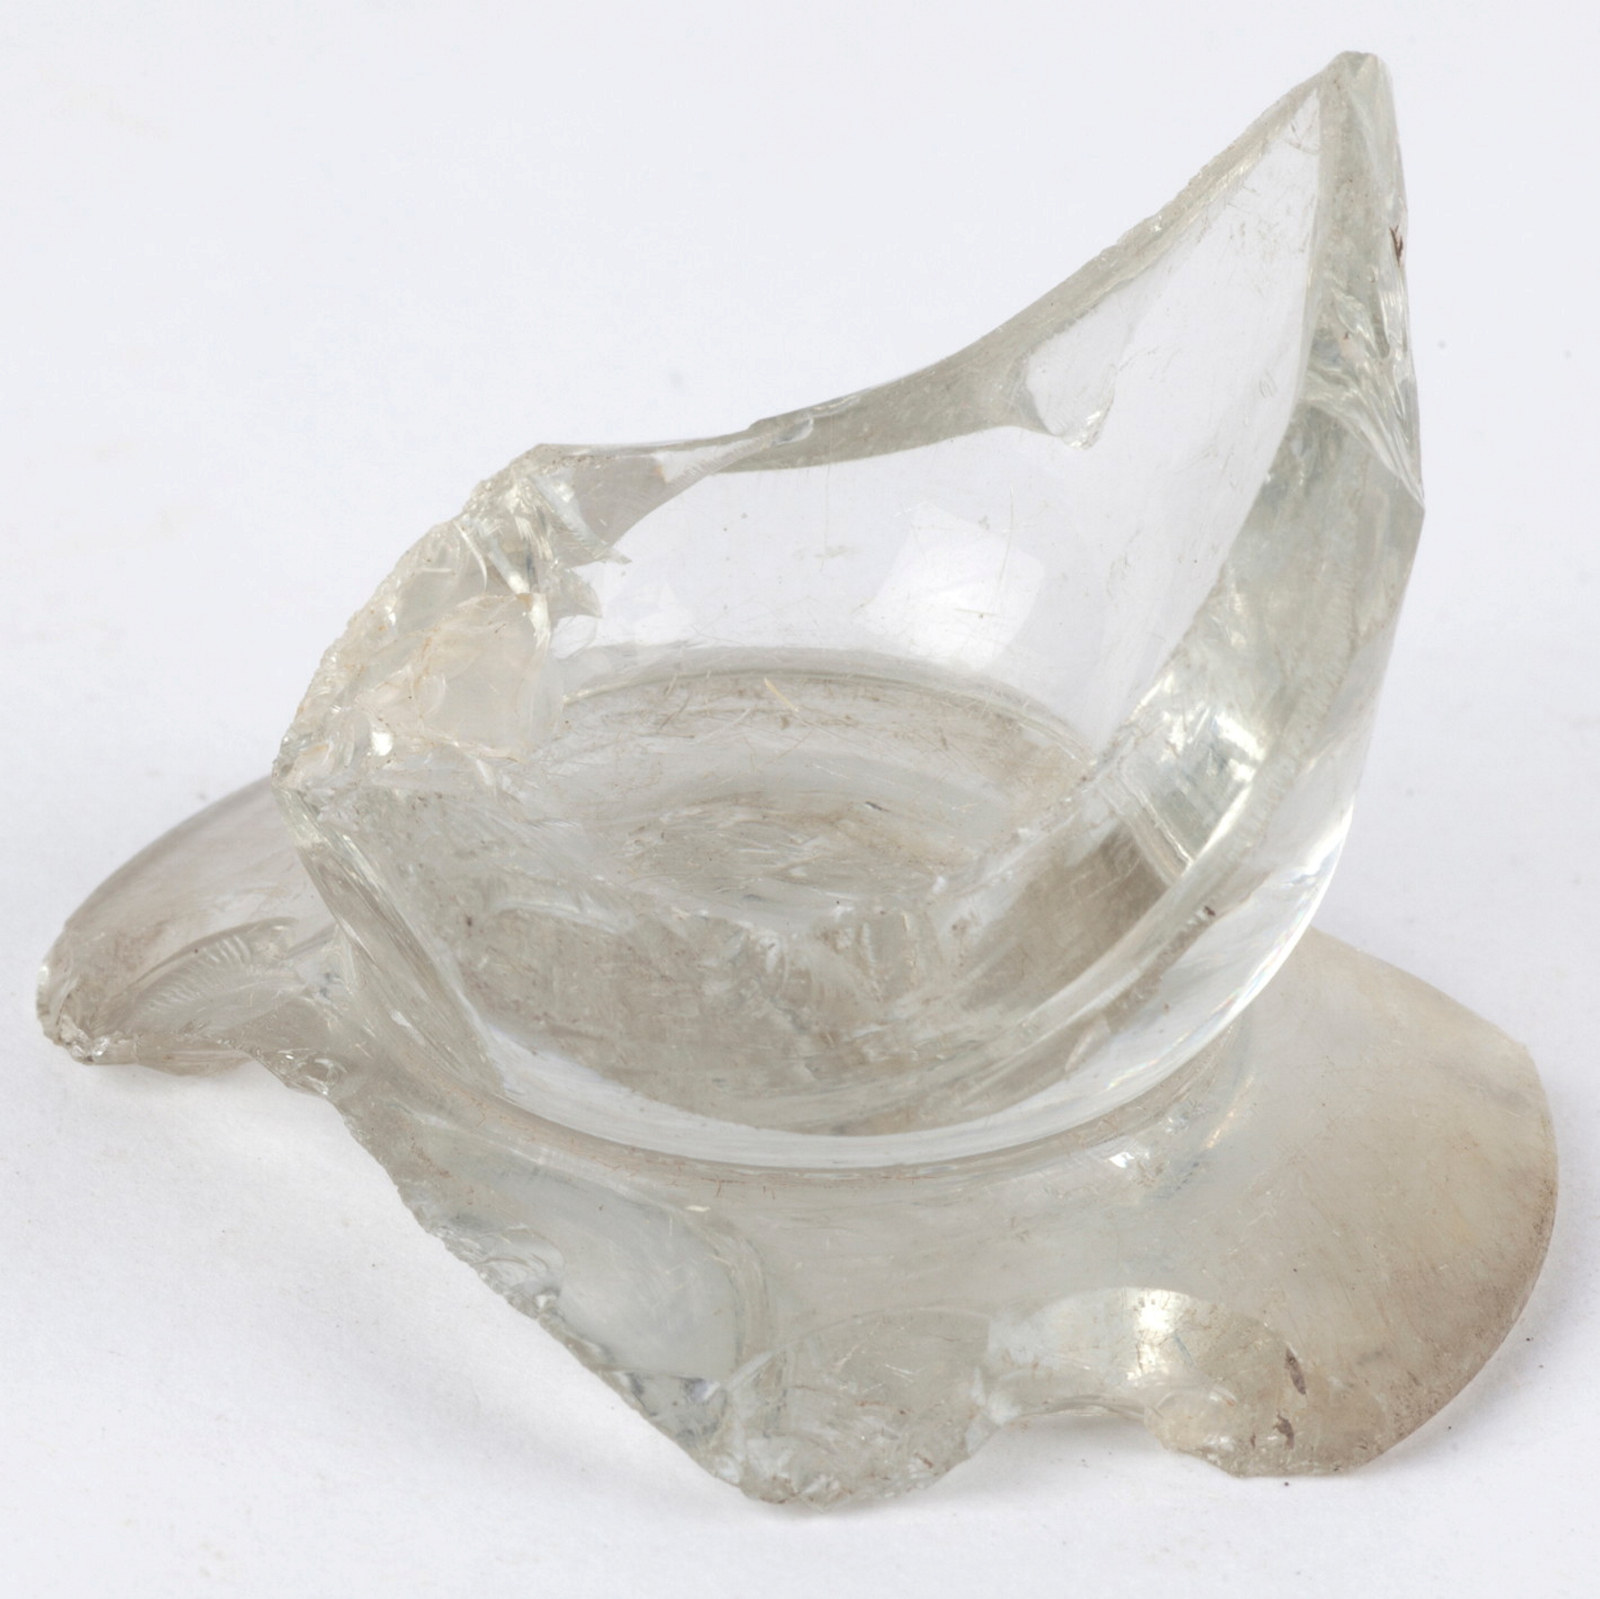 Sharp glass bottle bottom fragment.